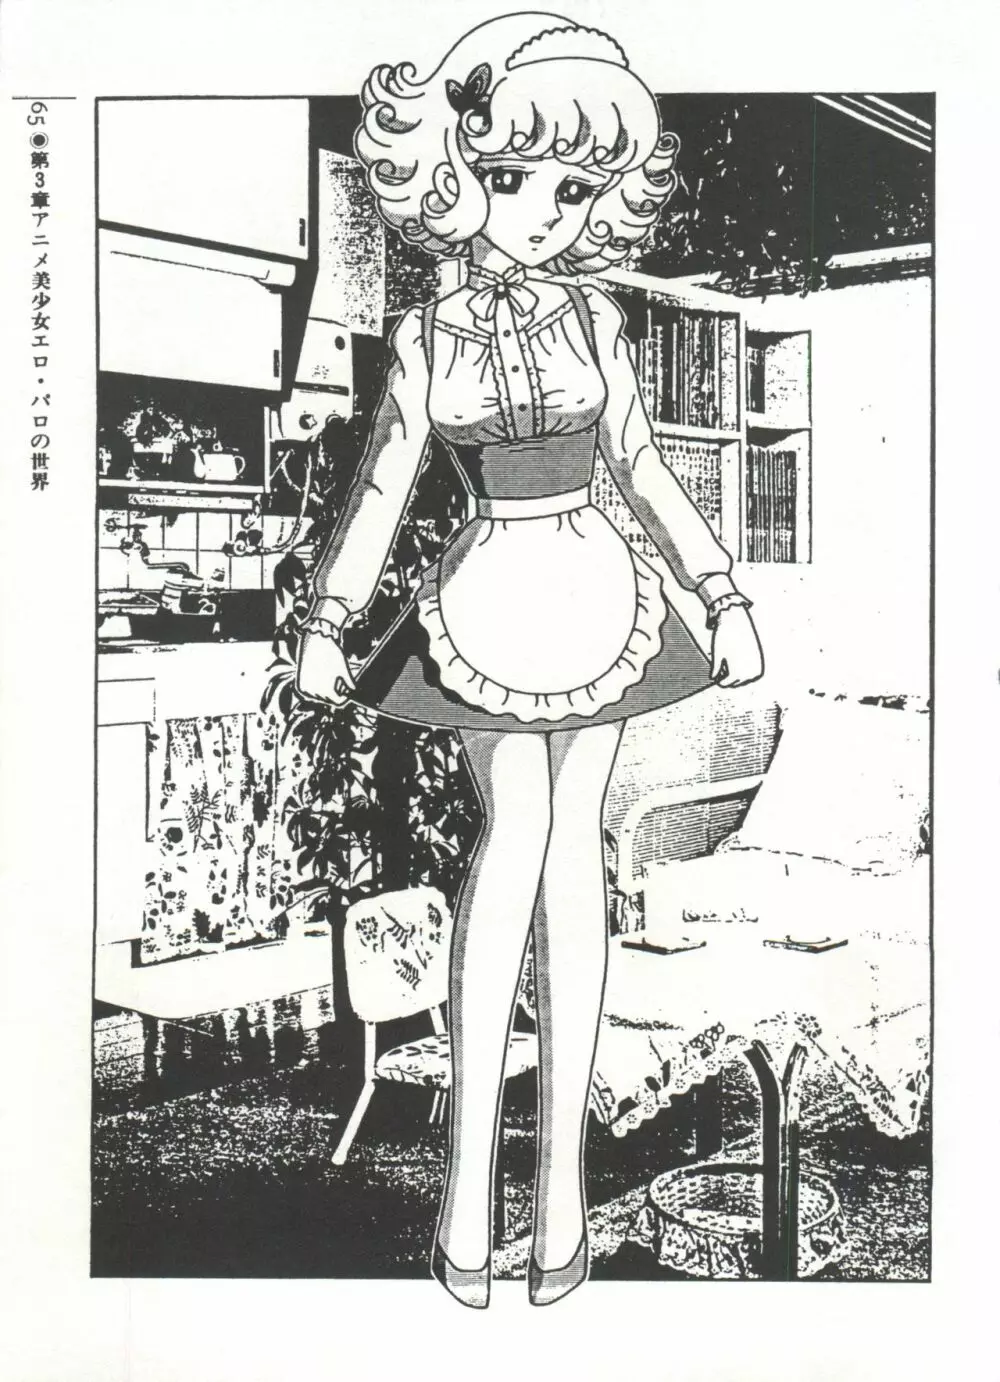 [Anthology] 美少女症候群(2) Lolita syndrome (よろず) 68ページ